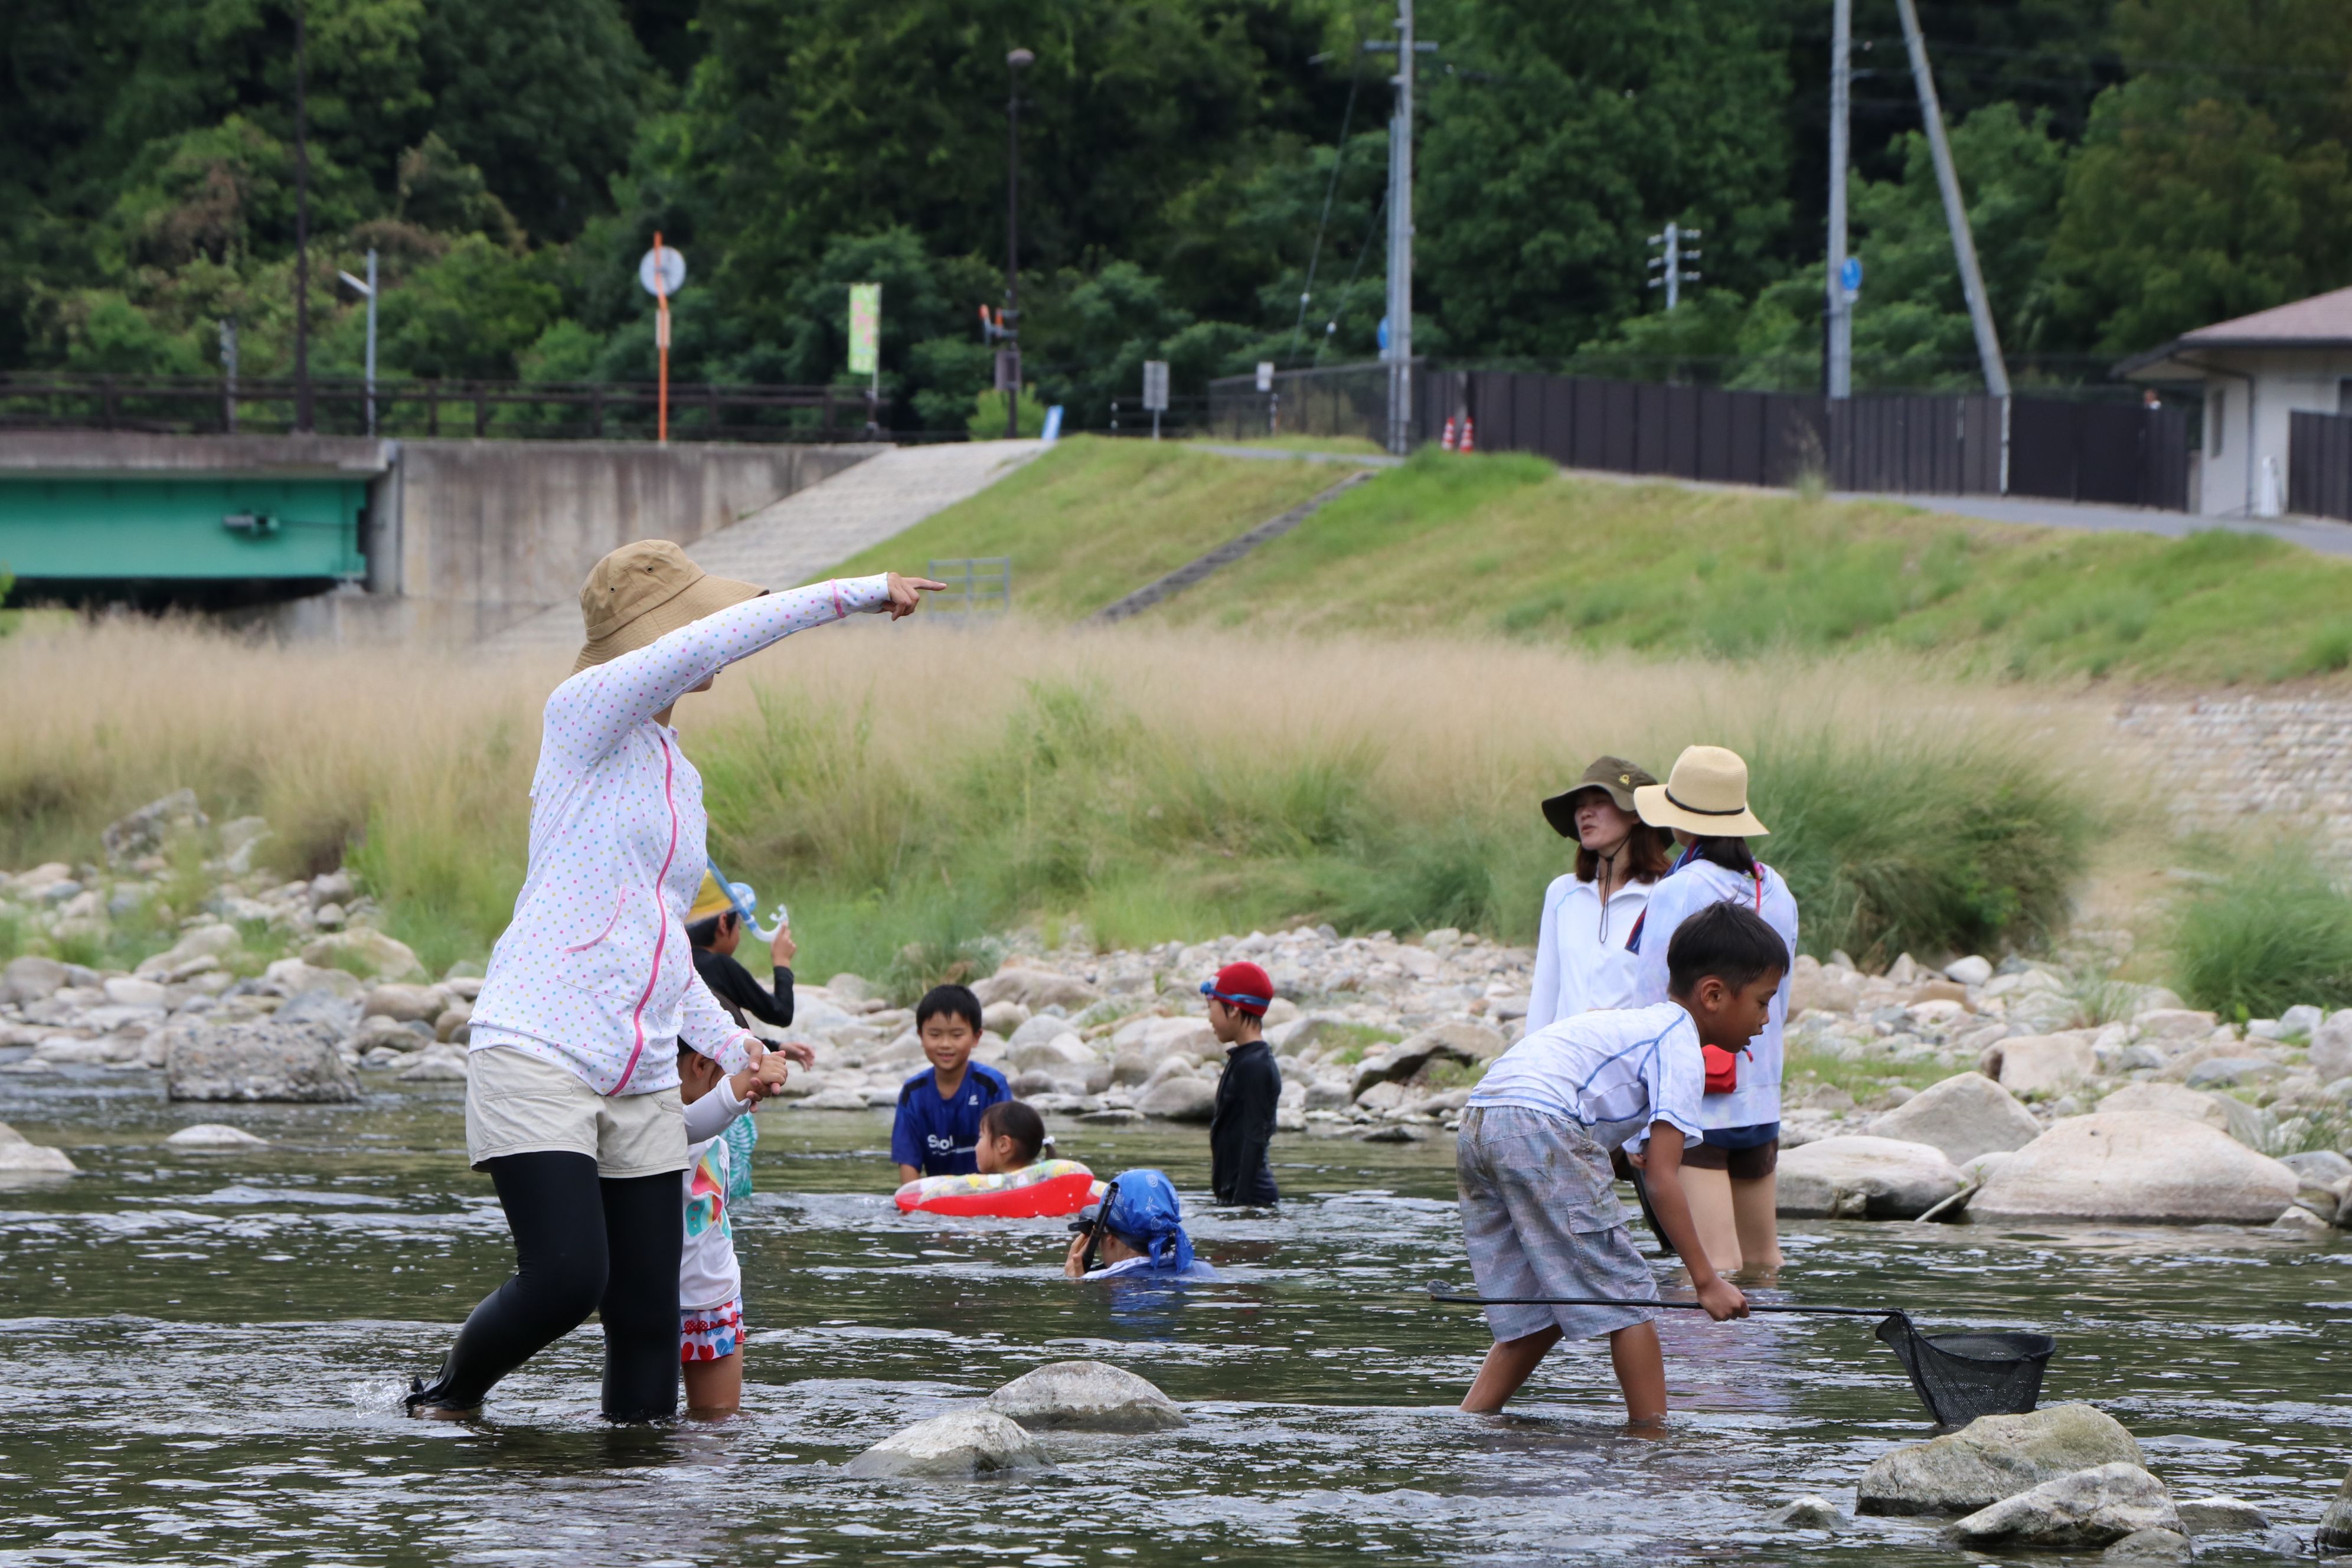 夏のプレーパーク「プレーパークで川を遊ぼう」を開催しました!の画像